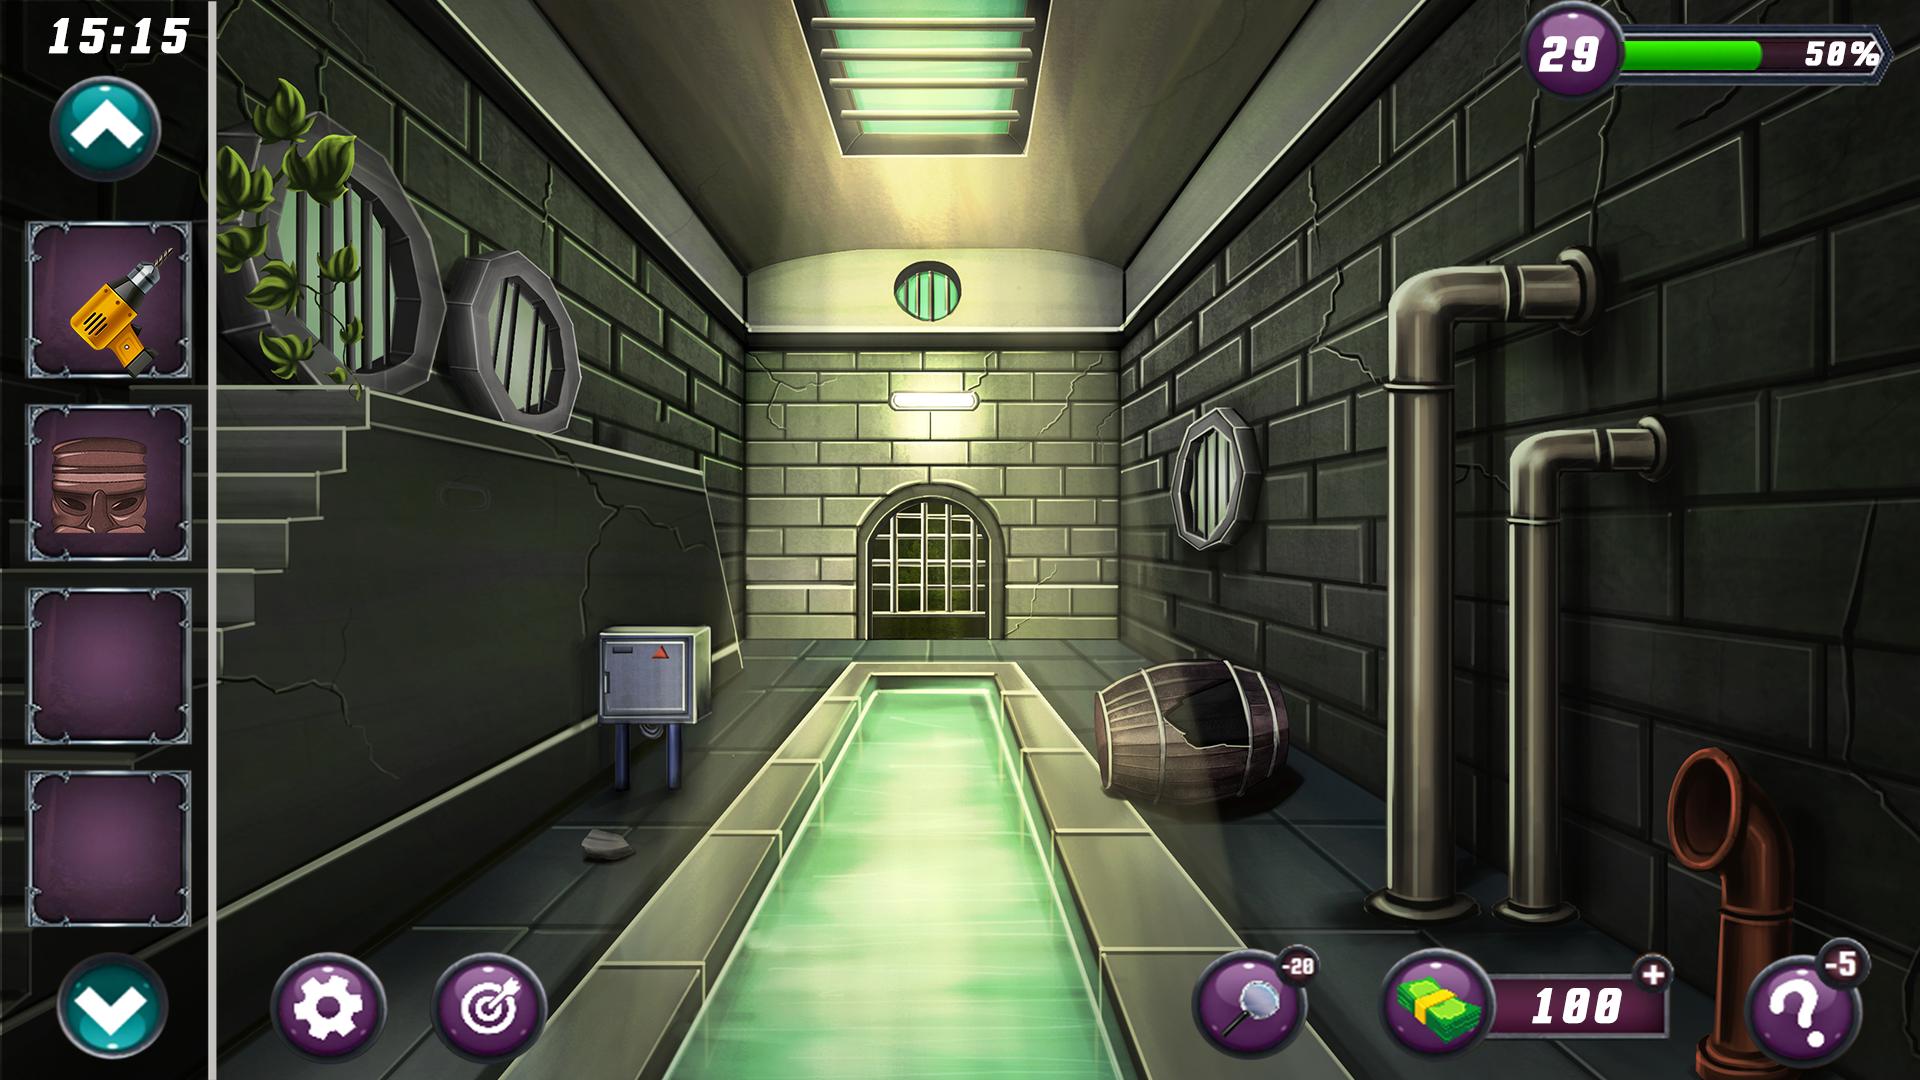 Игра 501 дверь прохождение. Головоломка с сейфом в игре. Exit дверь казино. Игра fun Escape Rooms на Android. Random Room Escape Door exit Level 44.